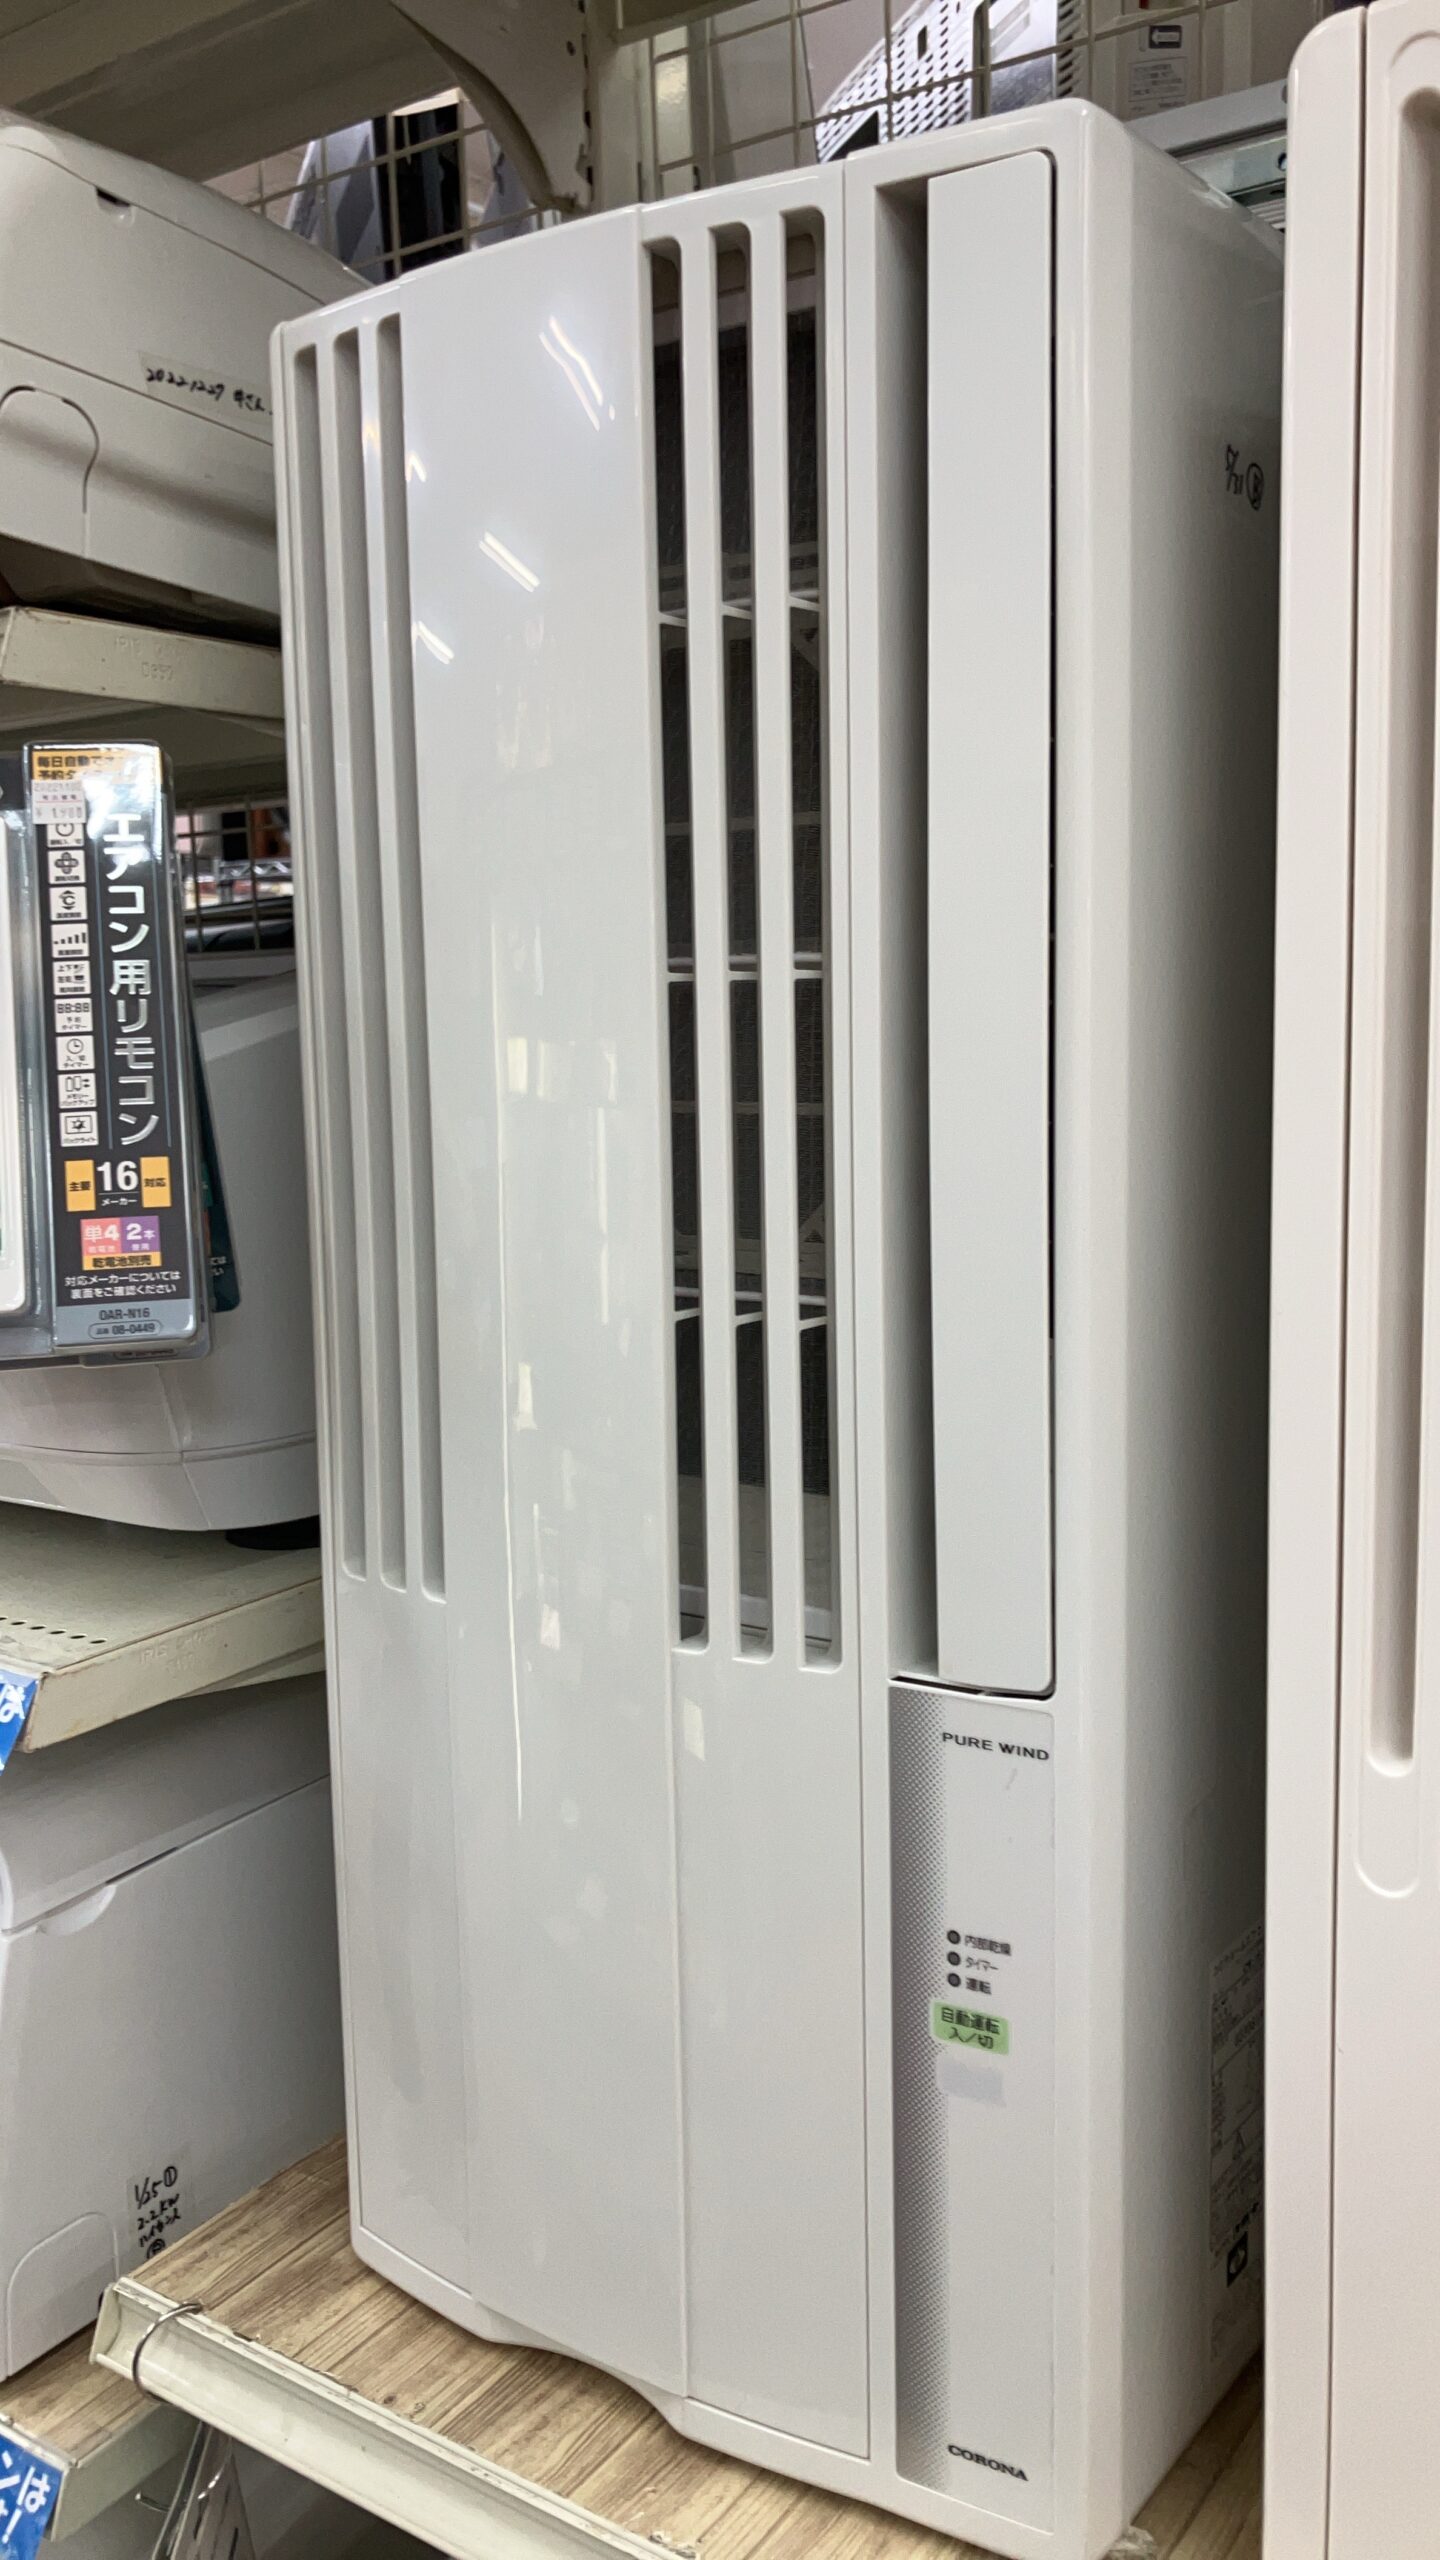 【美品!! CORONA/コロナ 1.8kwウィンドウエアコン 2018年製 CW-1618】をお買取致しました！！ - リサイクルマートは現在冷蔵庫の買取、家具の買取強化中です！お気軽にお問い合わせください。